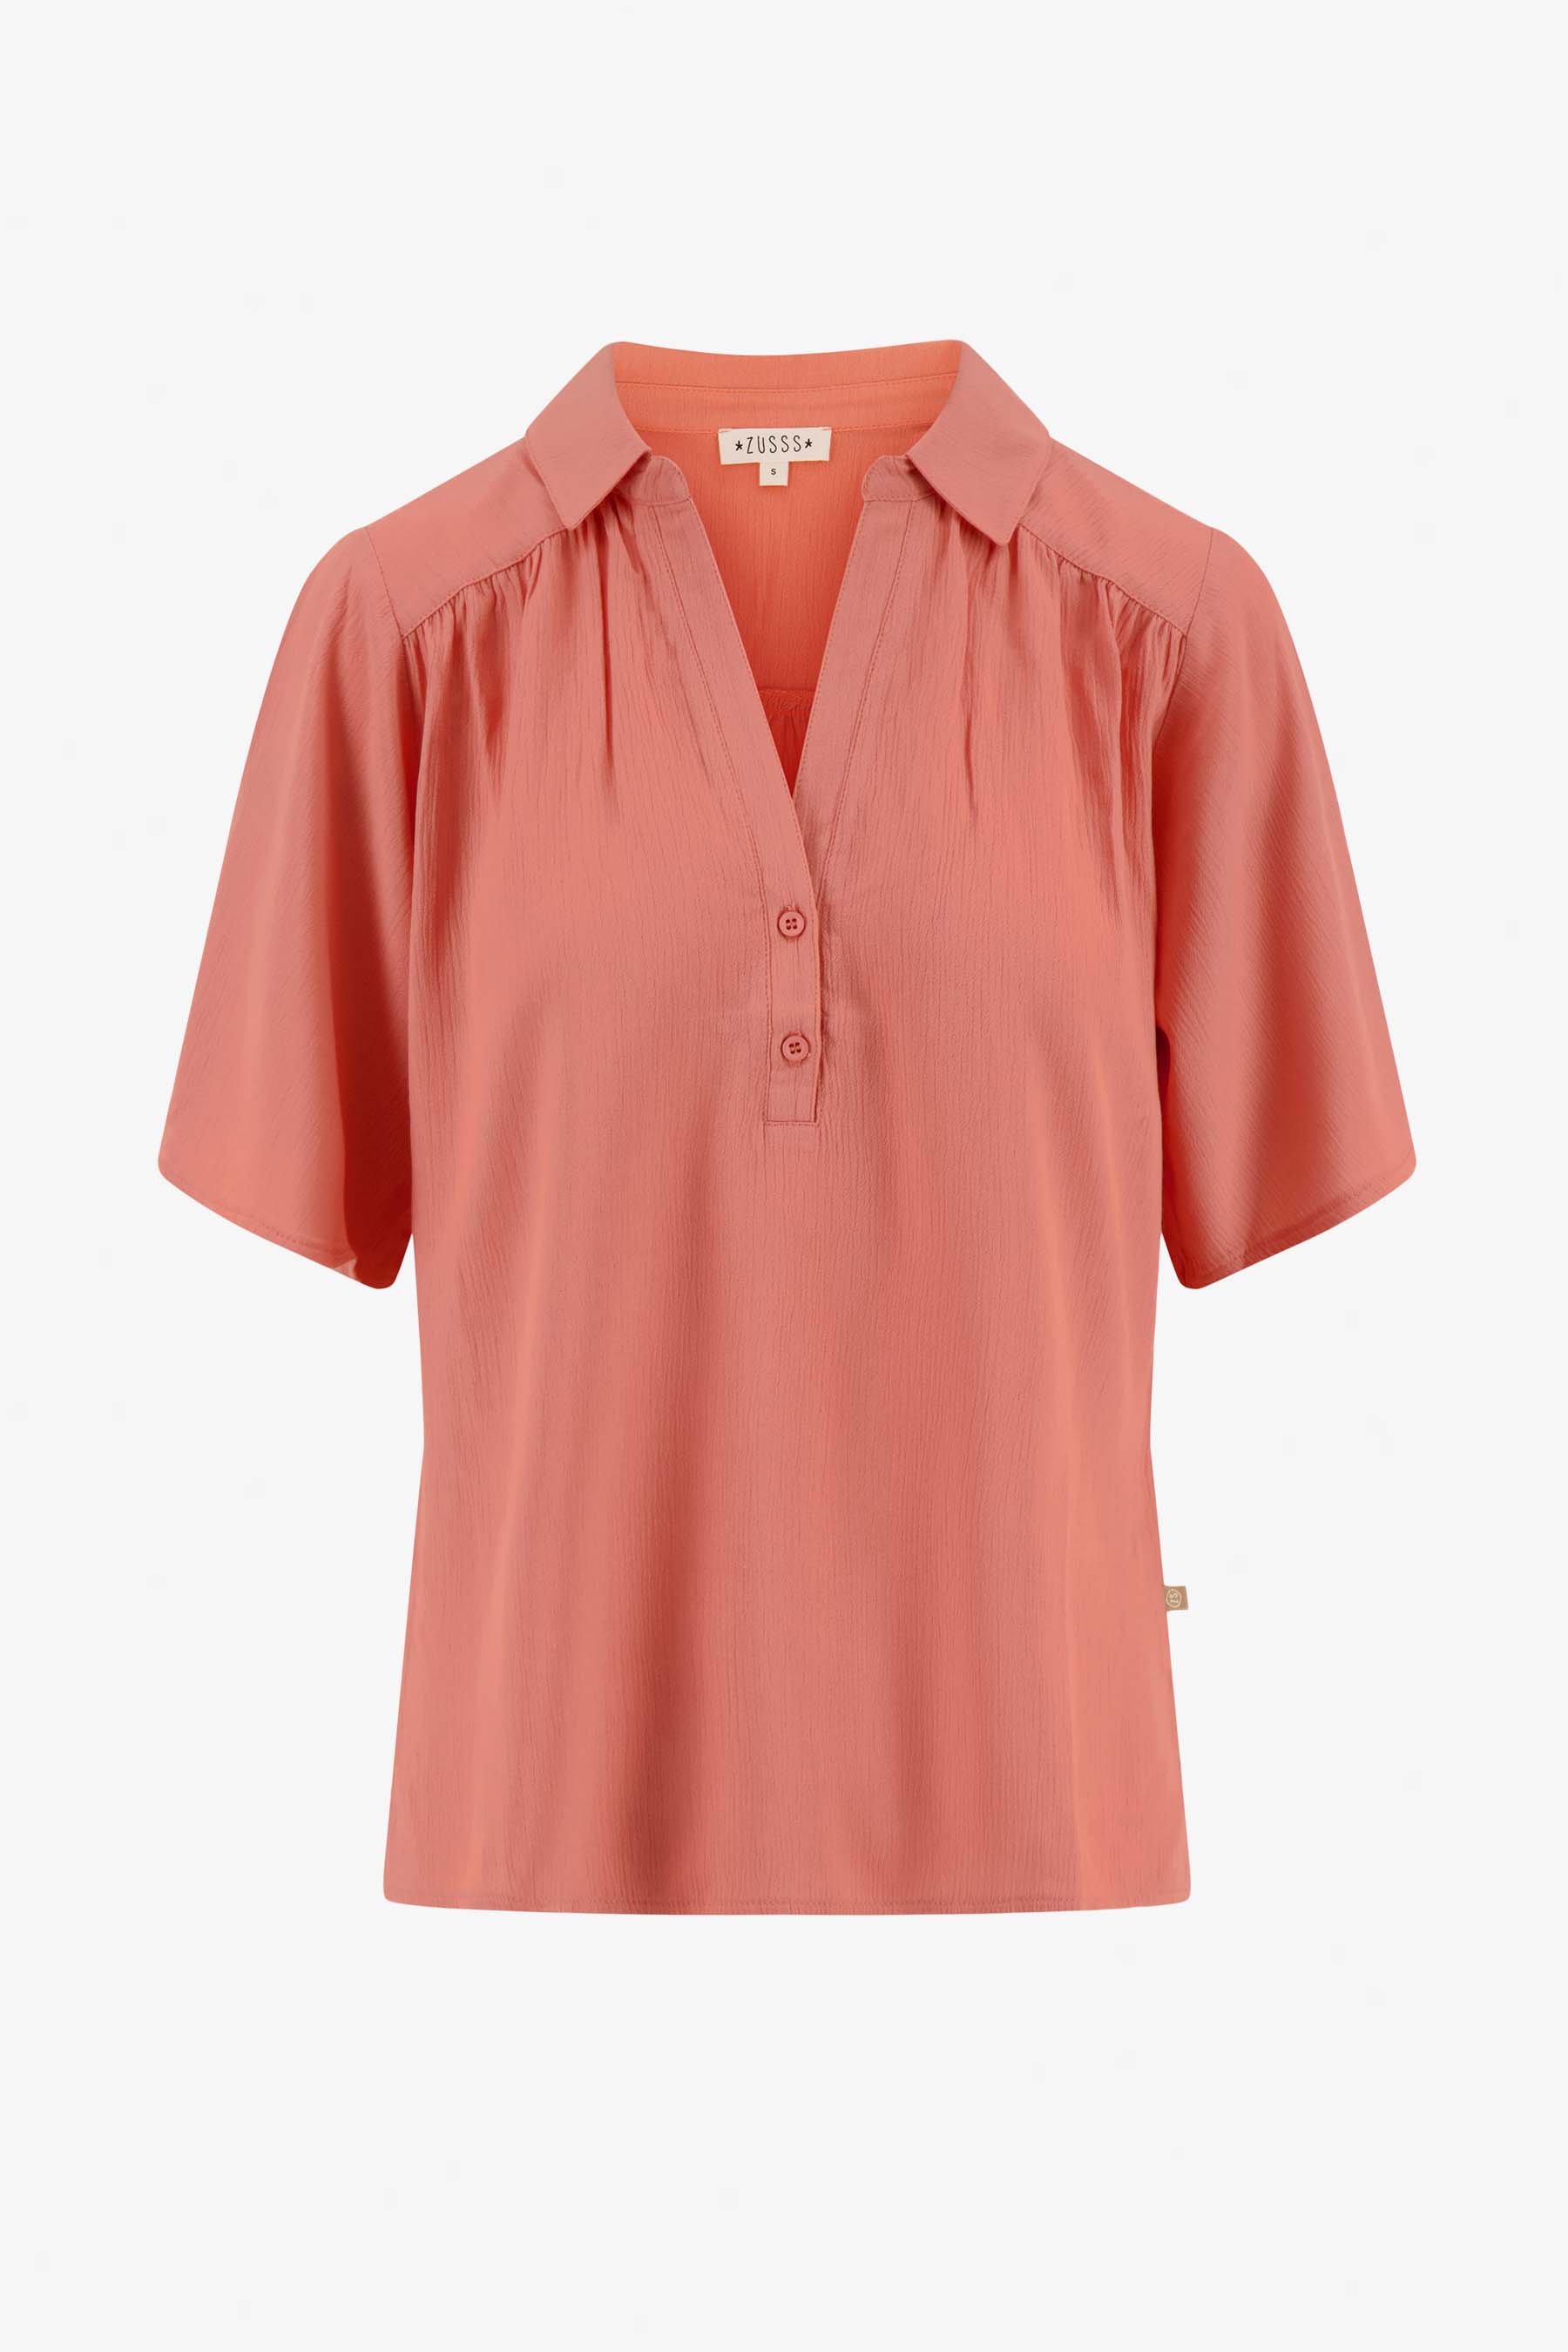 Blouse met korte mouw - Zusss blouse met korte mouw koraalroze 0304 045 7045 voor 1 - 194